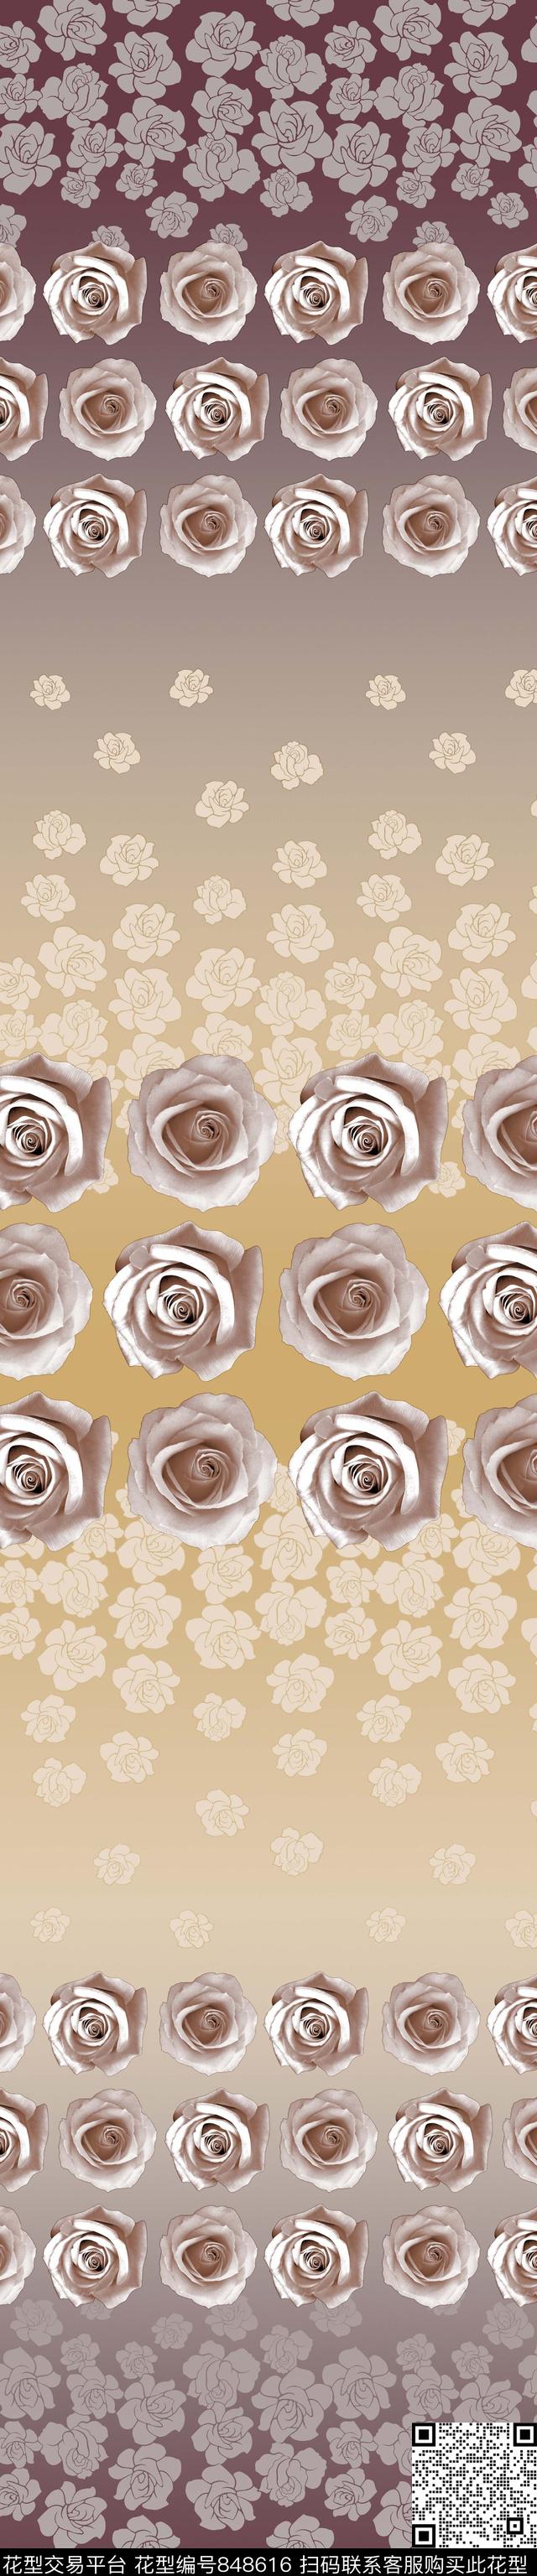 YJH170510e.jpg - 848616 - 玫瑰 花卉 窗帘 - 传统印花花型 － 窗帘花型设计 － 瓦栏